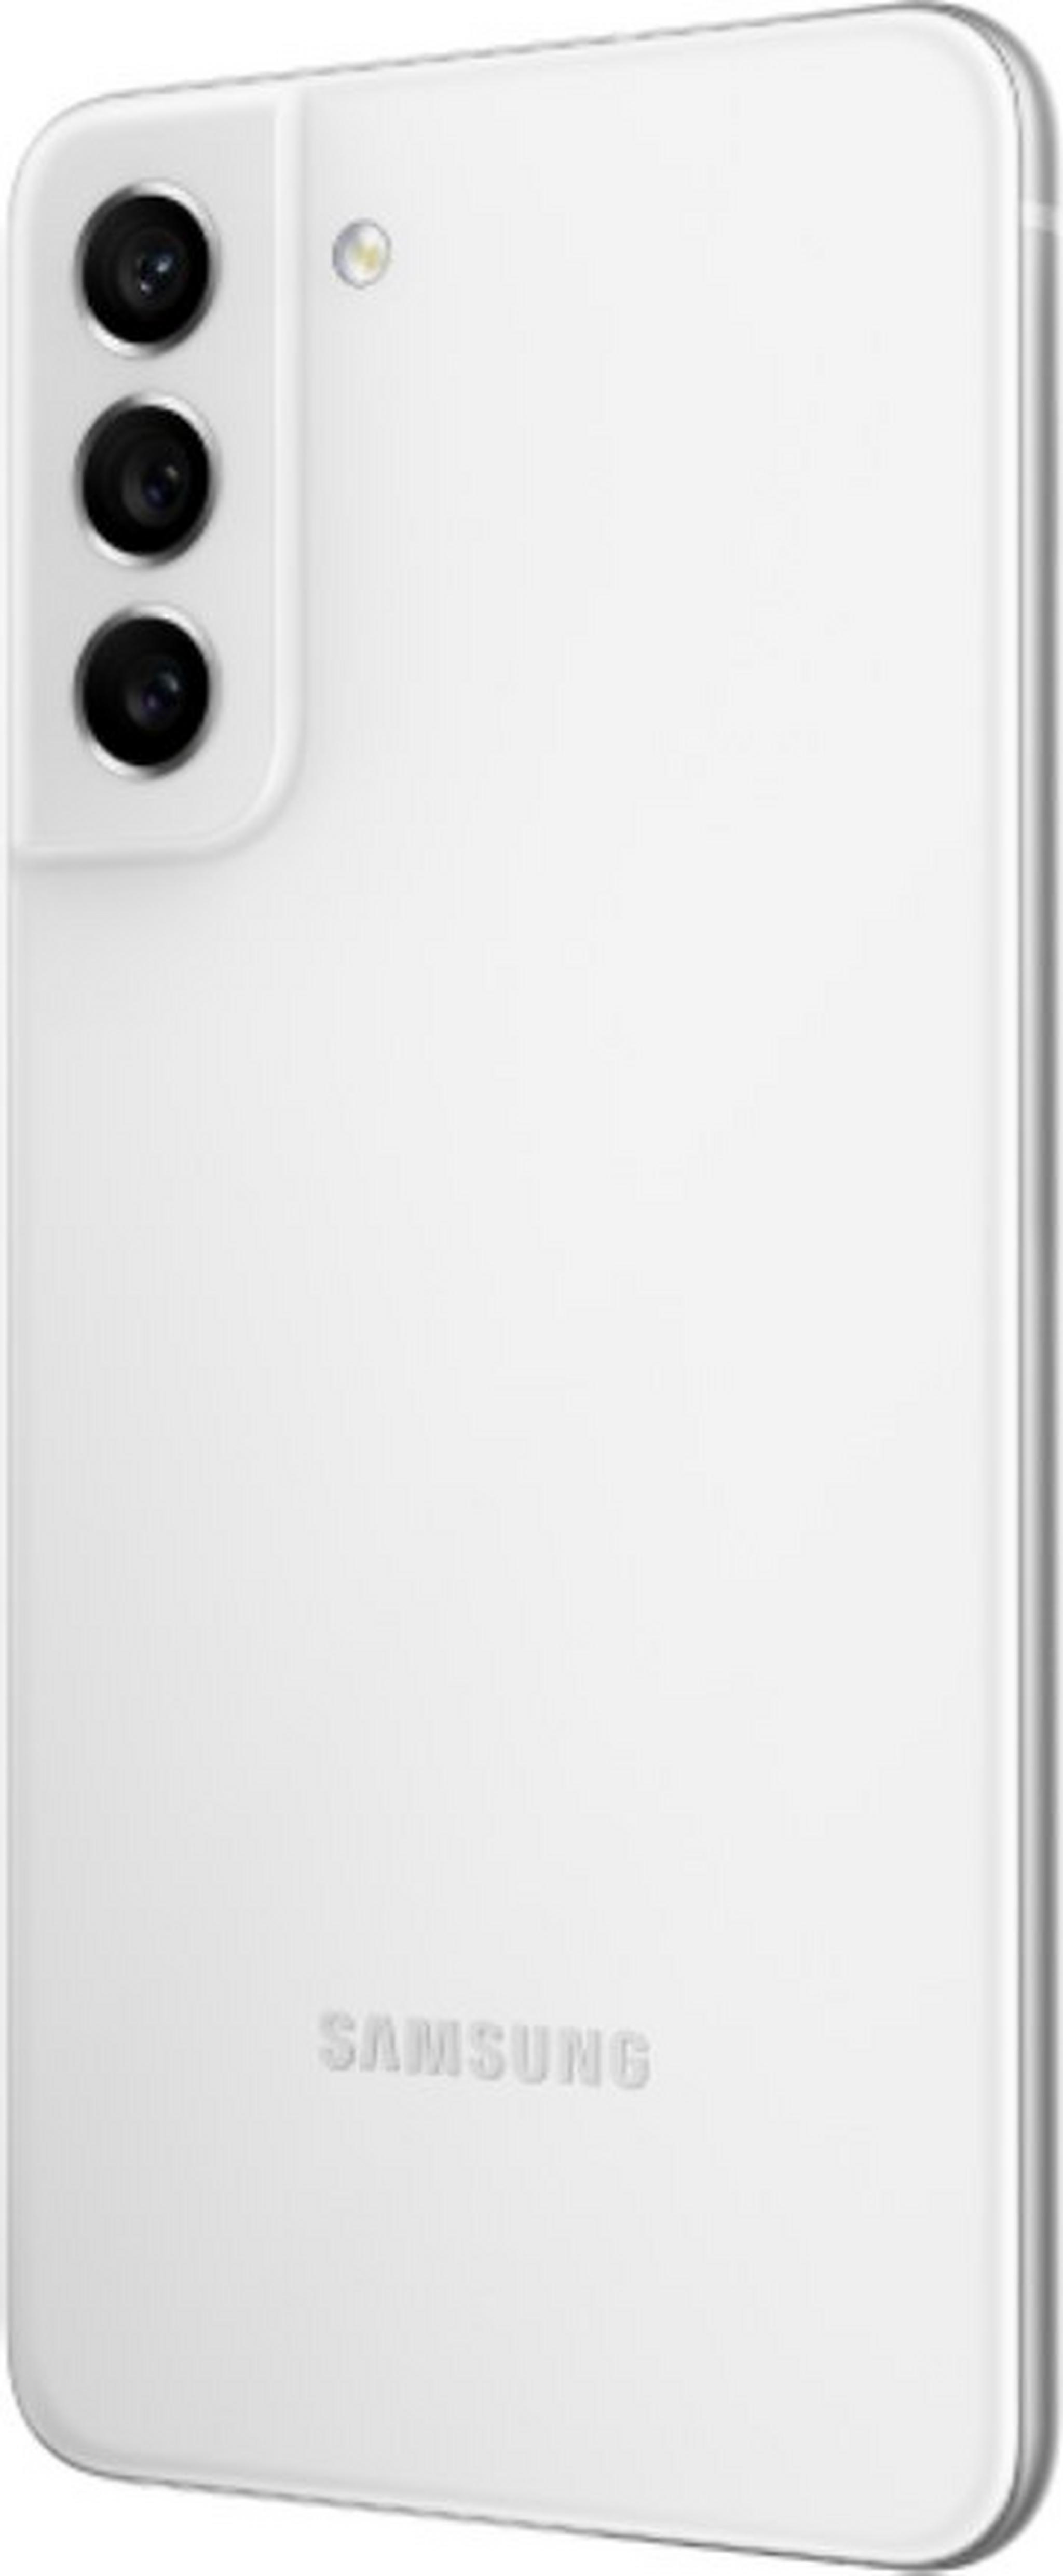 هاتف سامسونج جالاكسي اس 21 اف اي بسعة 128 جيجابايت وتقنية 5 جي - أبيض